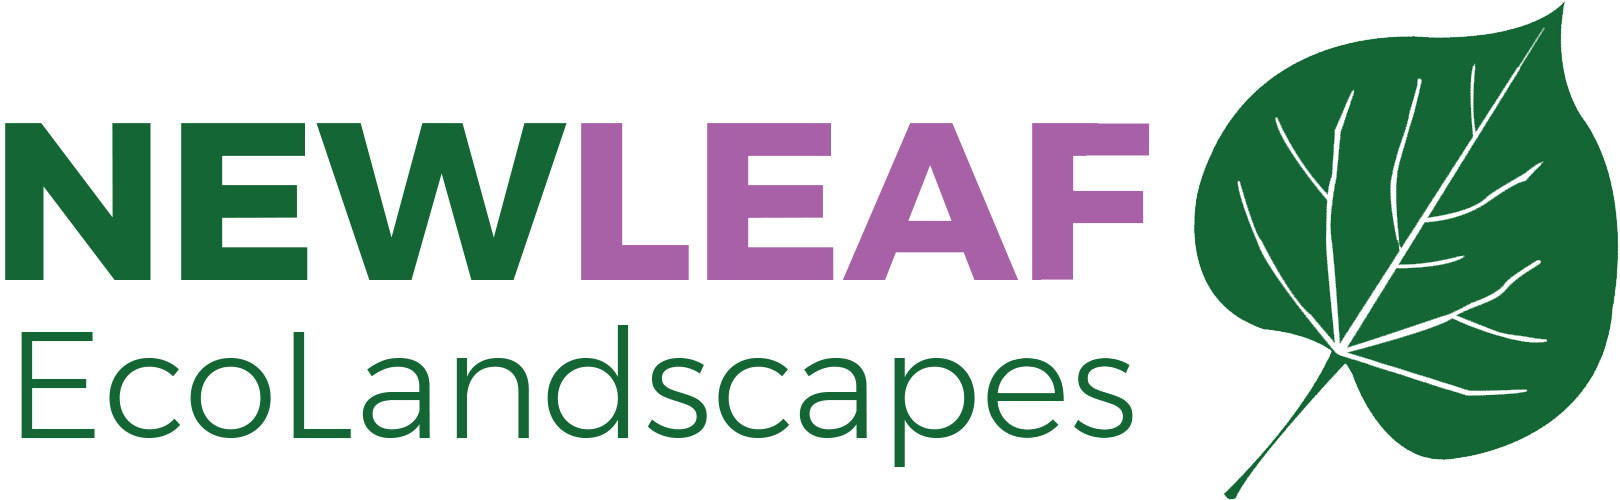 New Leaf Ecolandscapes